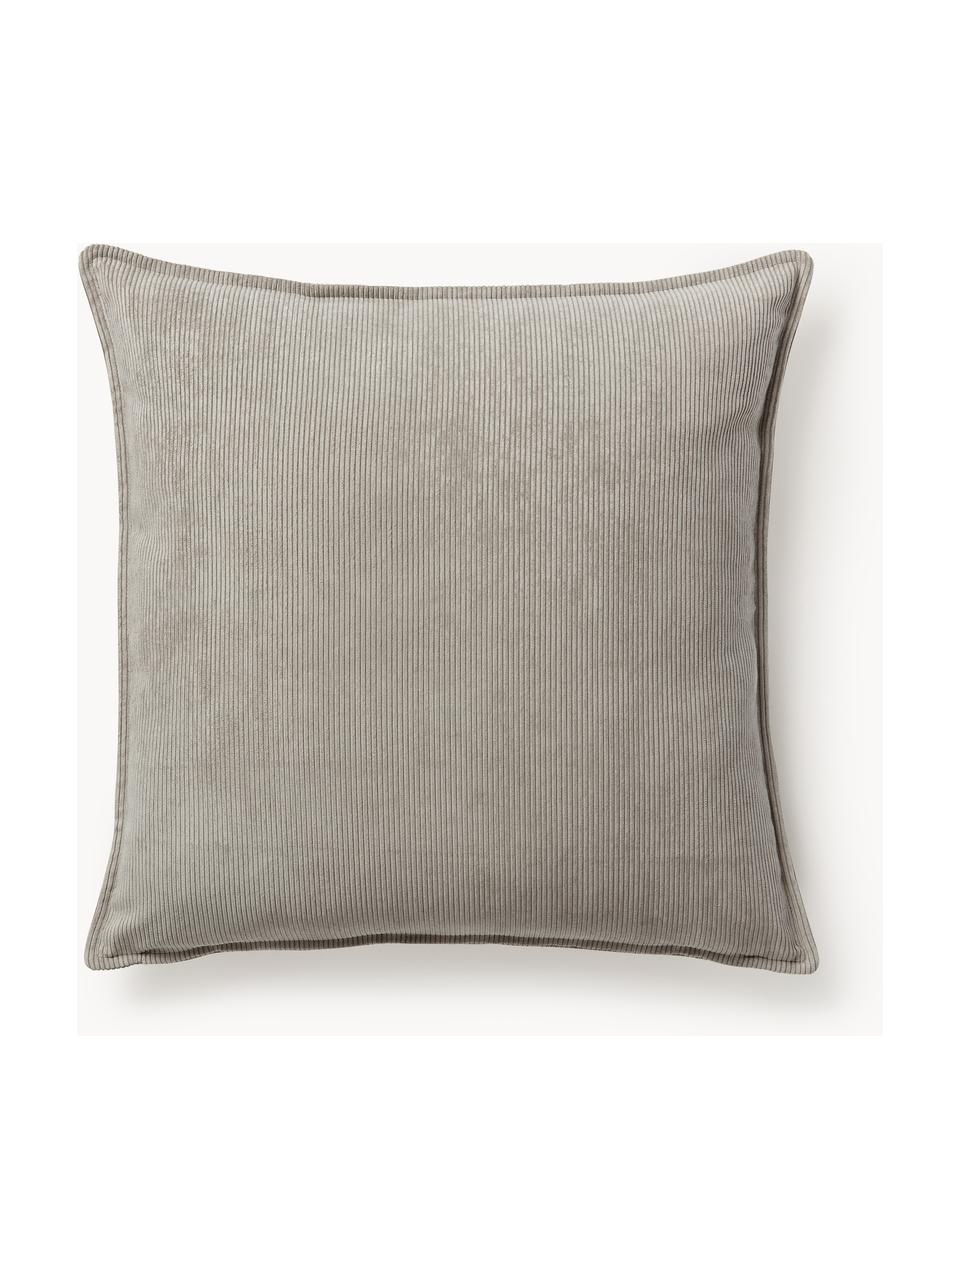 Cord-Sofa-Kissen Lennon, Hülle: 92 % Polyester, 8 % Polya, Cord Grau, B 70 x L 70 cm